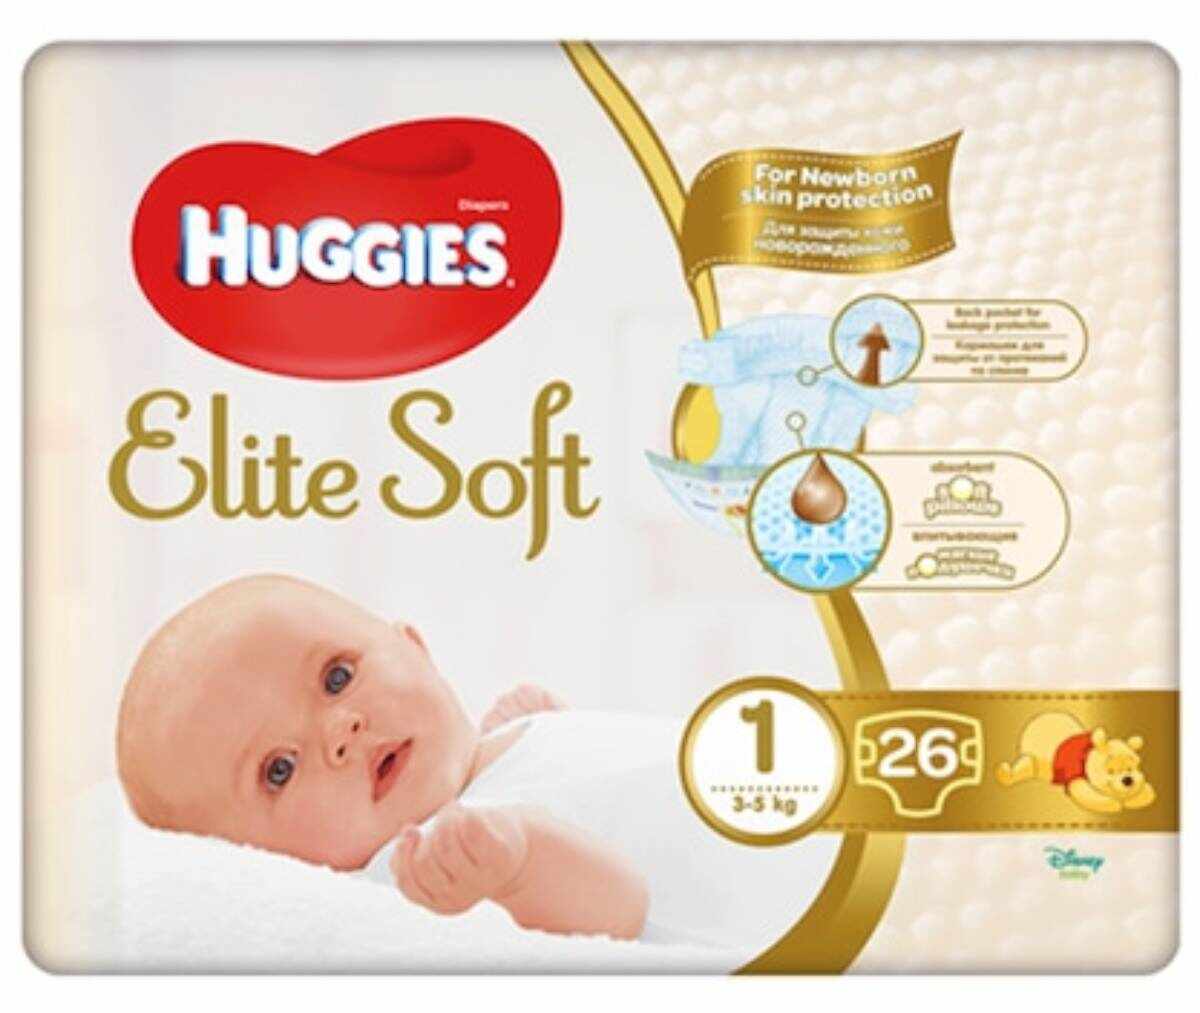 Scutece Huggies Elite Soft Convi, Nr 1, 3-5 kg, 26 buc